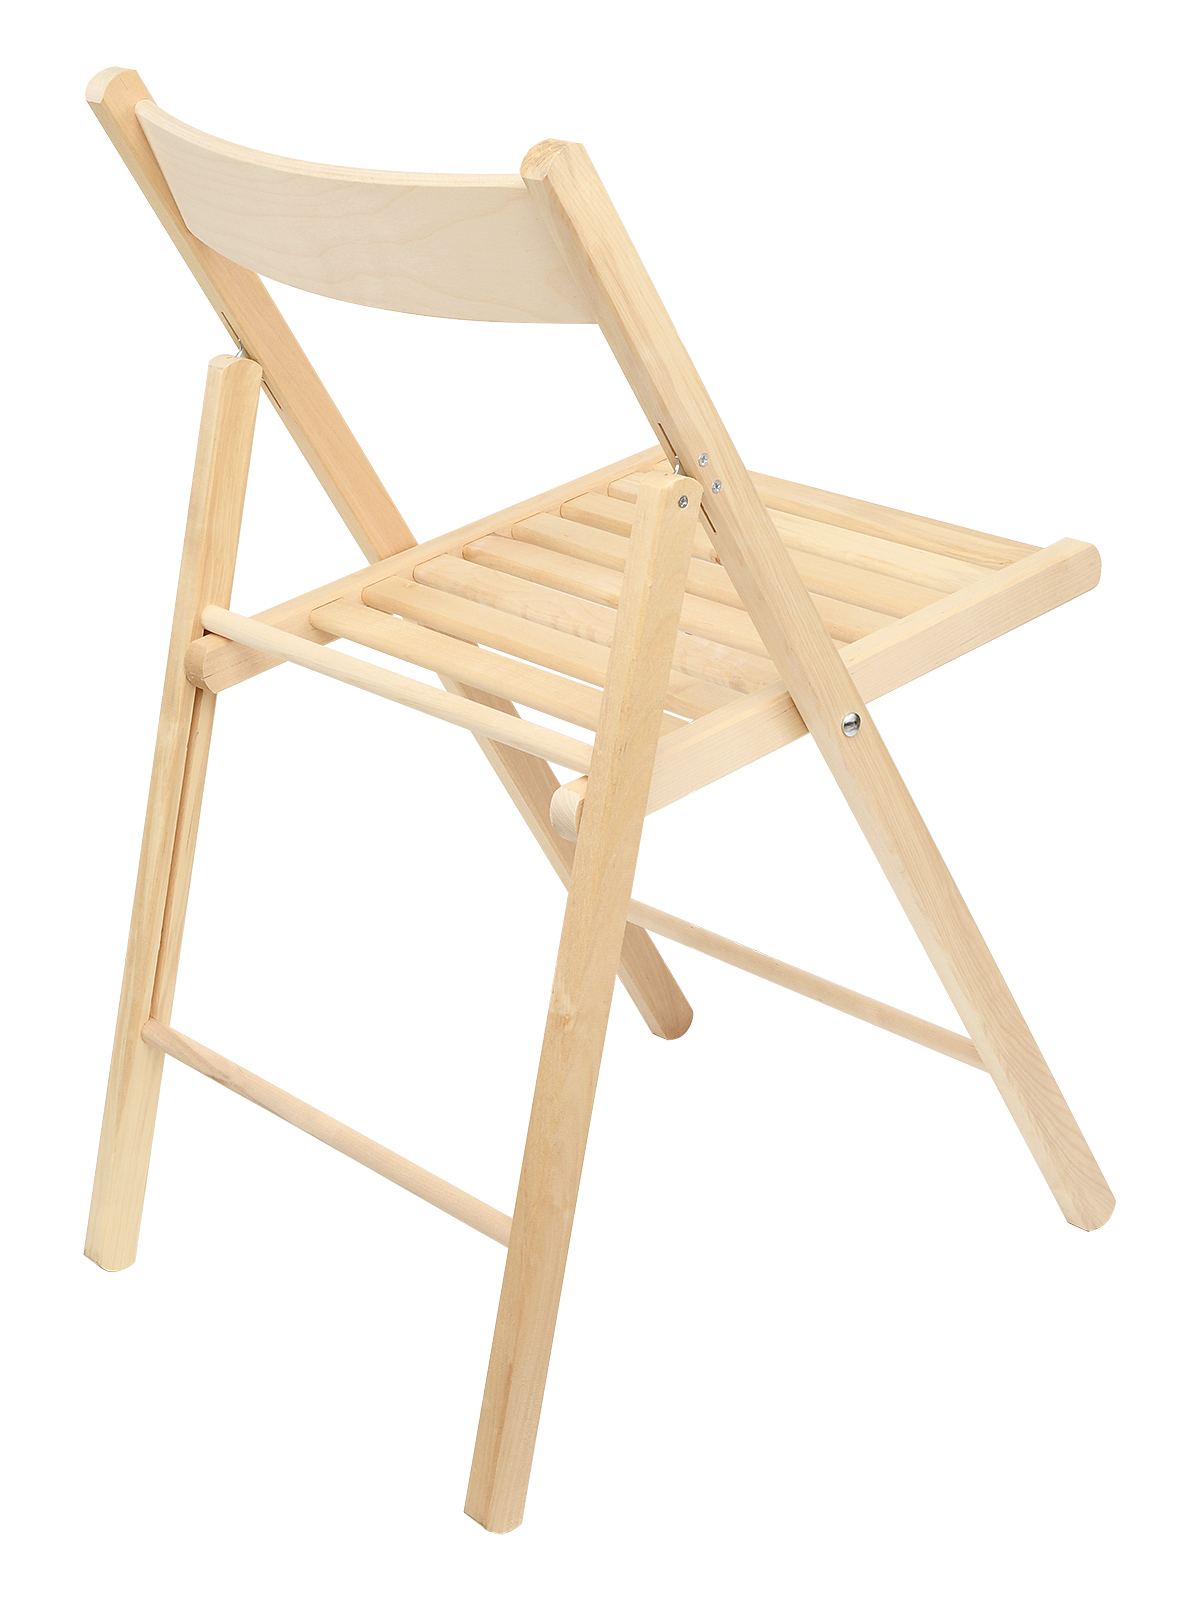 Складные стулья отзывы. Стул складной Kett-up. Стул складной деревянный Kett-up. Складные стулья Kett-up Eco дерево. Шезлонг Kett-up Picnic Eco.